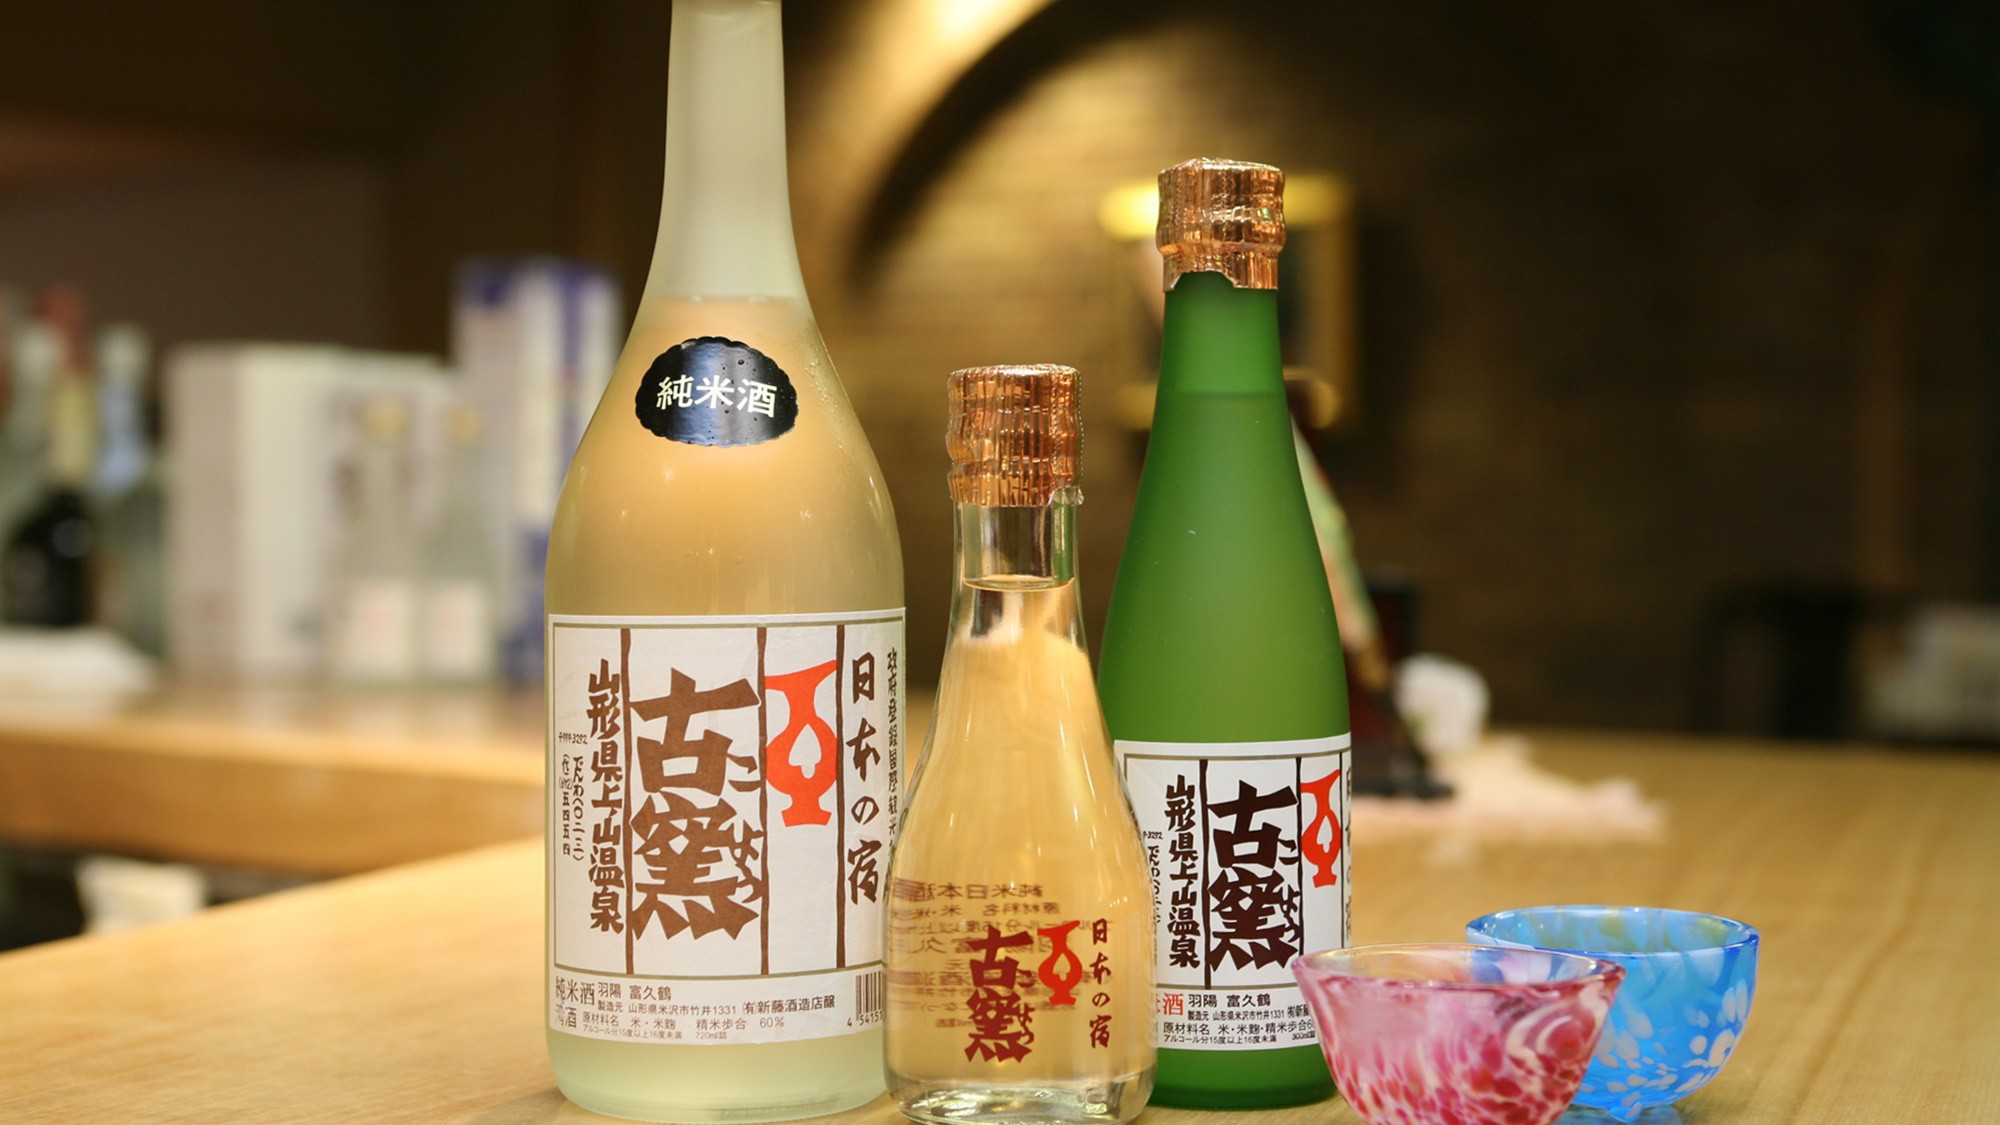 【古窯酒】オリジナルの純米吟醸酒もございます。会食場・売店などで是非お試し下さい。